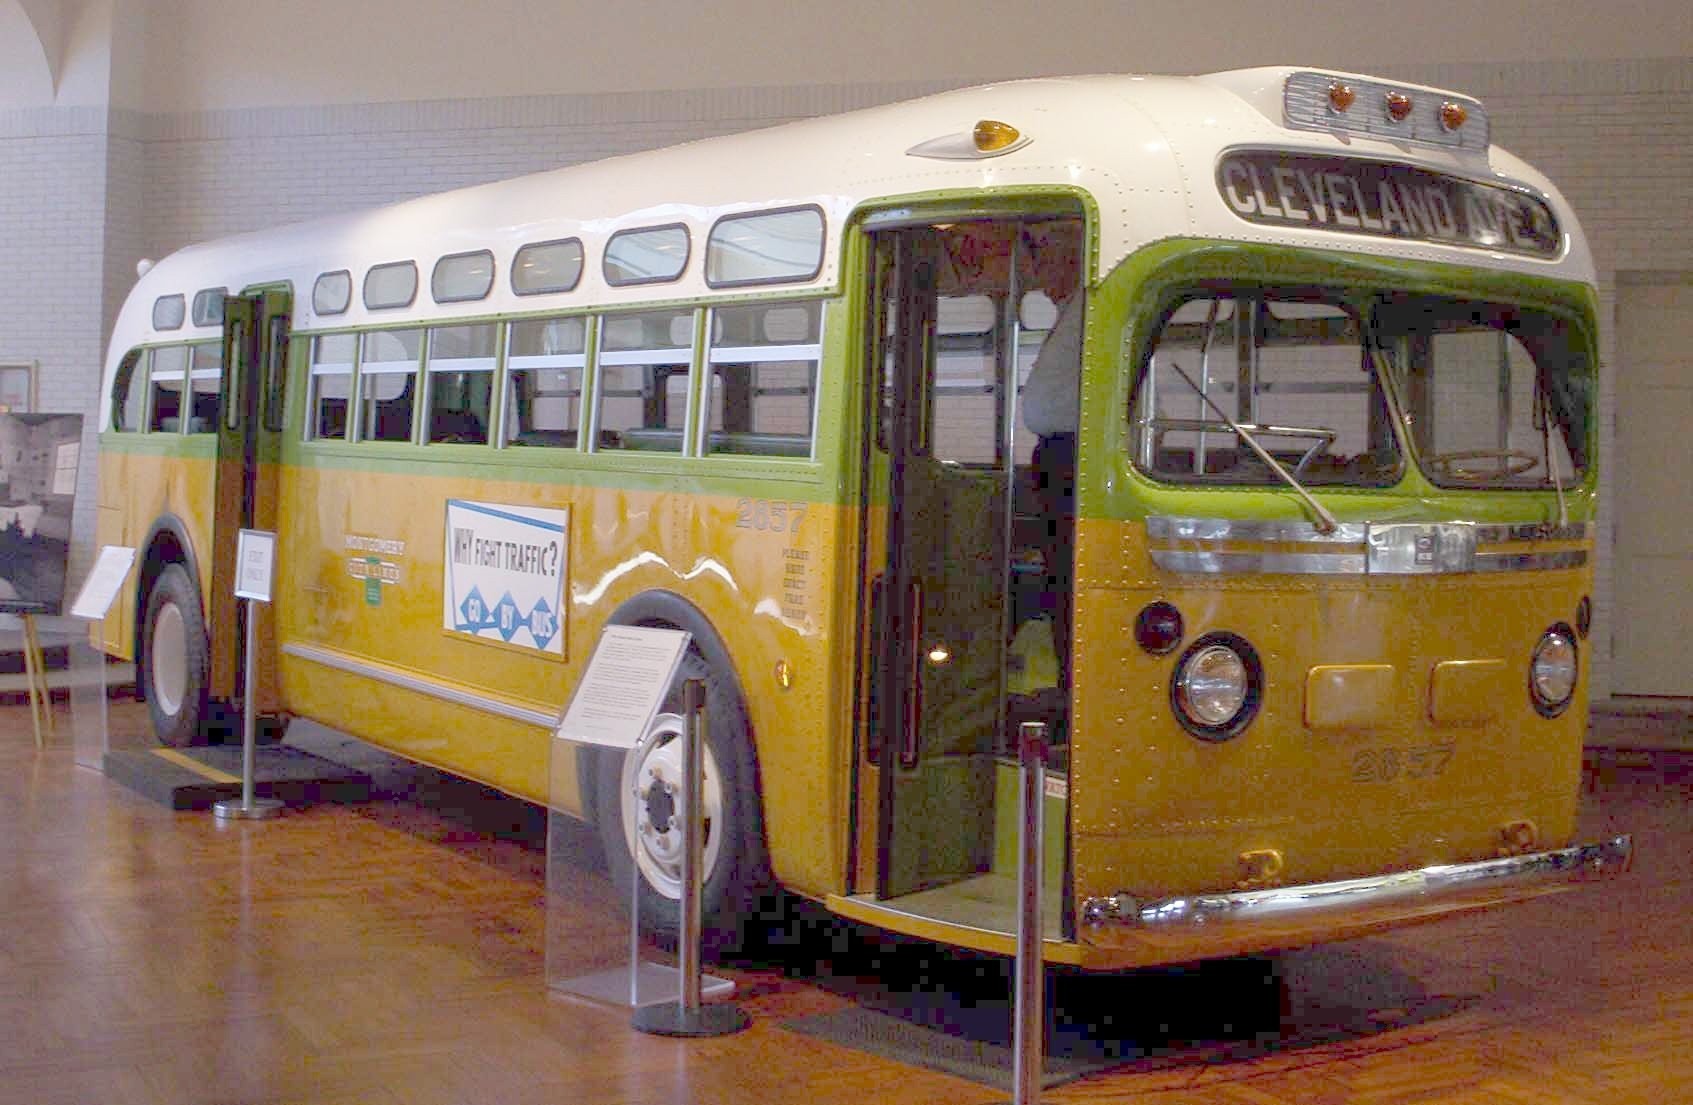 الحافلة التي وقعت به المشكلة في متحف هنري فورد